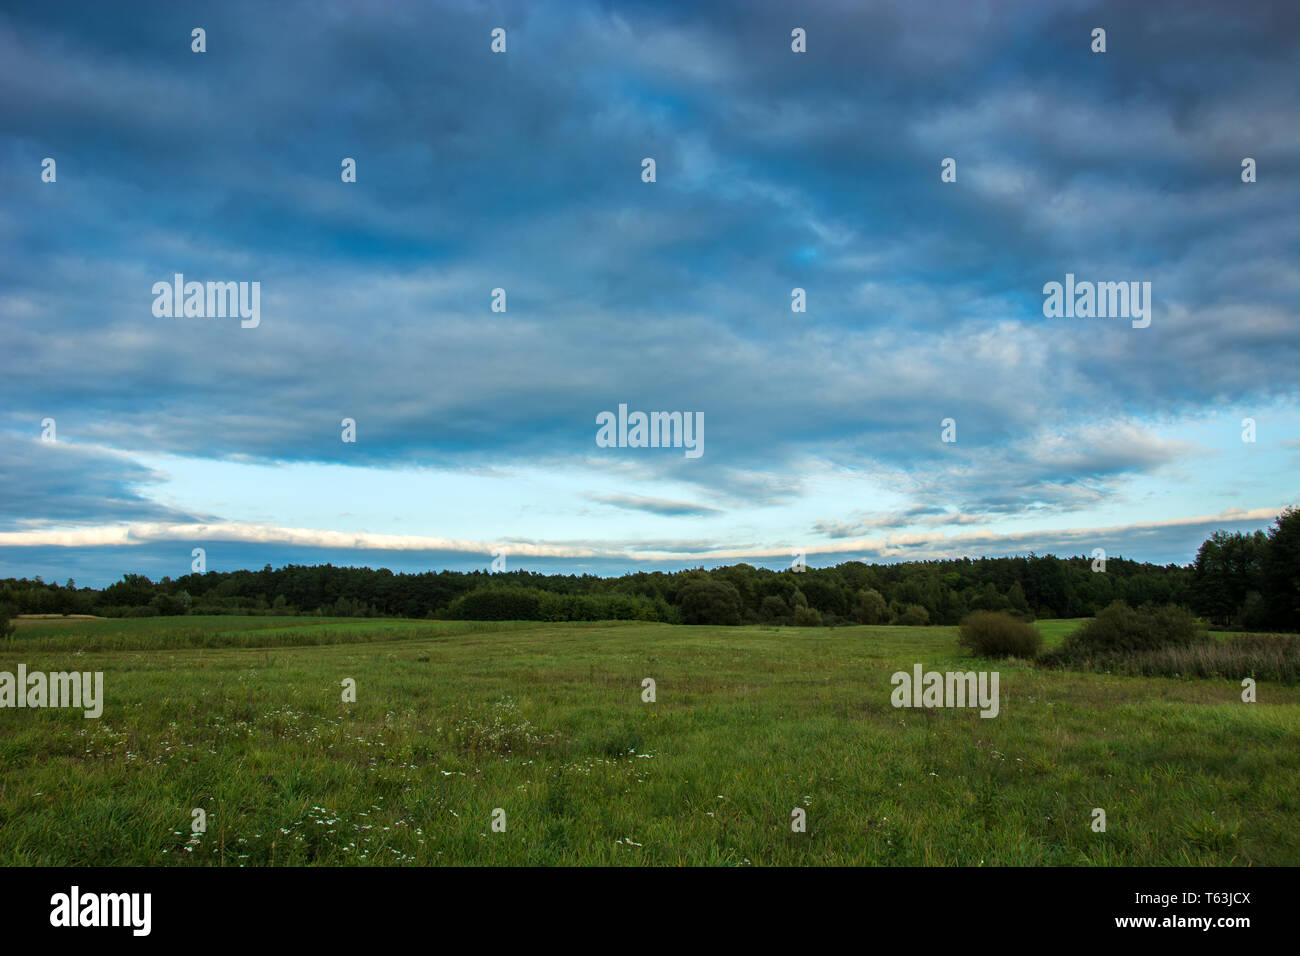 Immenso prato verde, foresta e le nuvole nel cielo Foto Stock